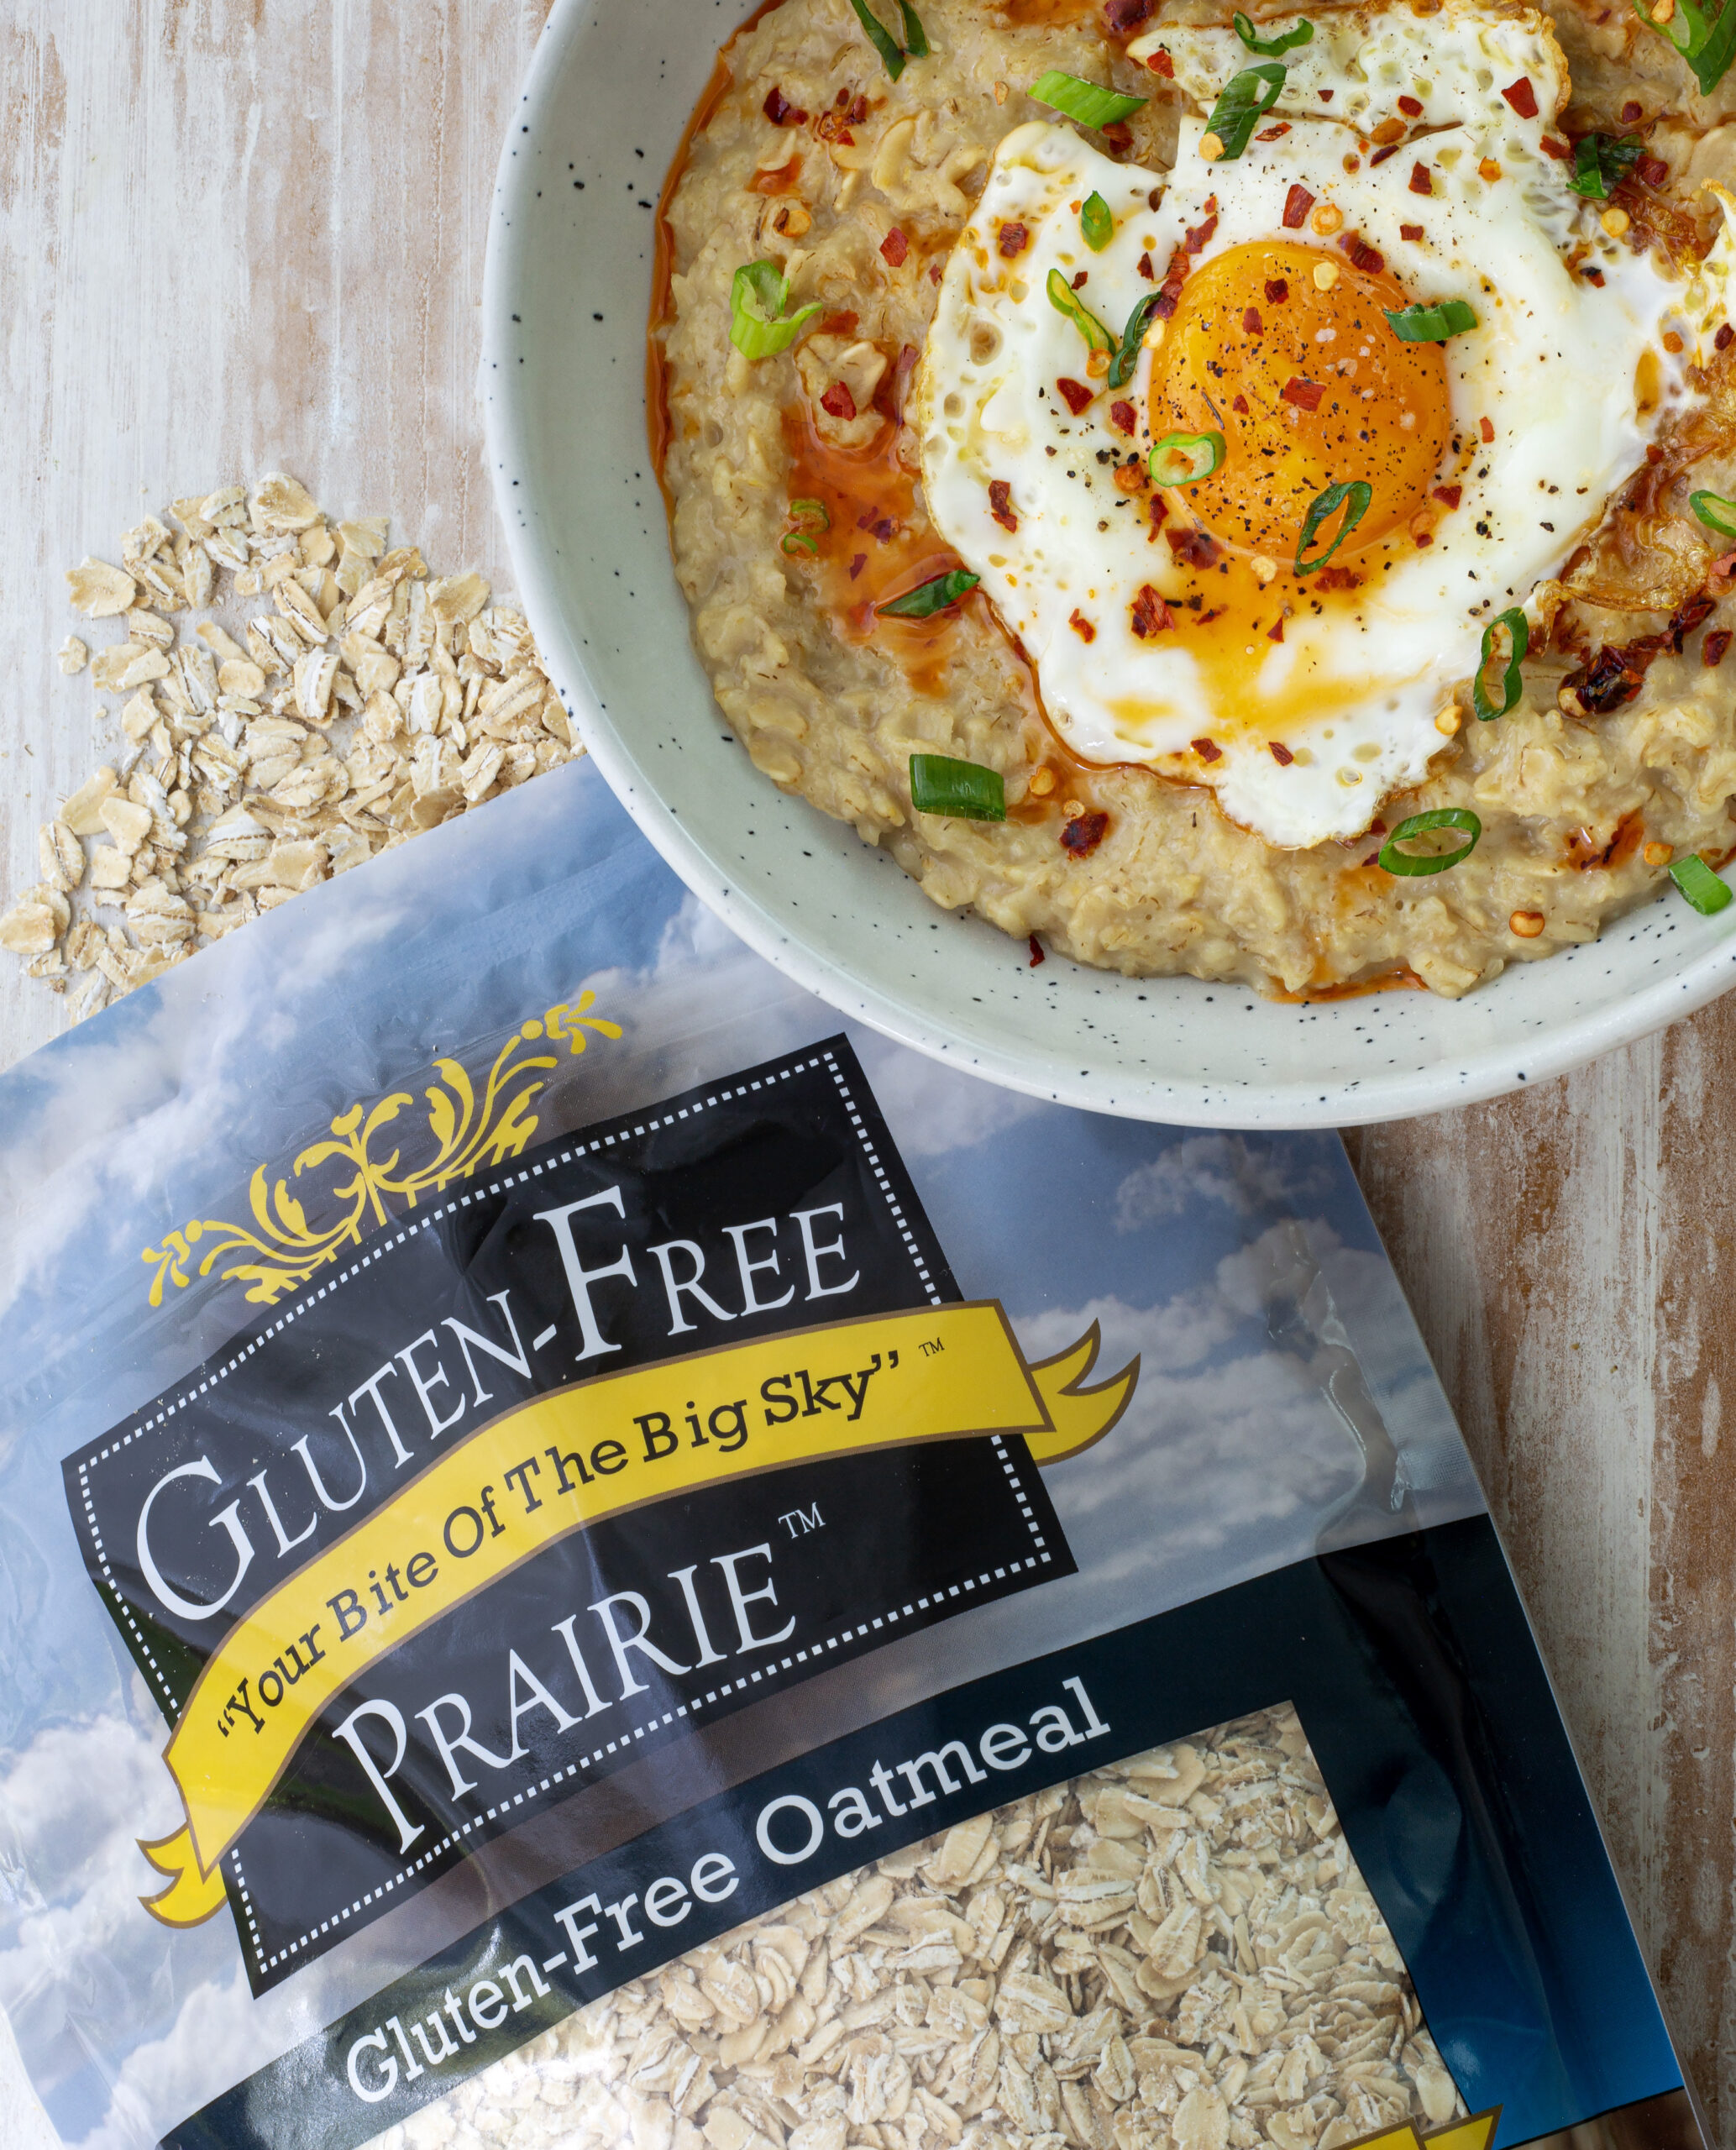 Breakfast oats with GlutenFree Prairie oats next to it.